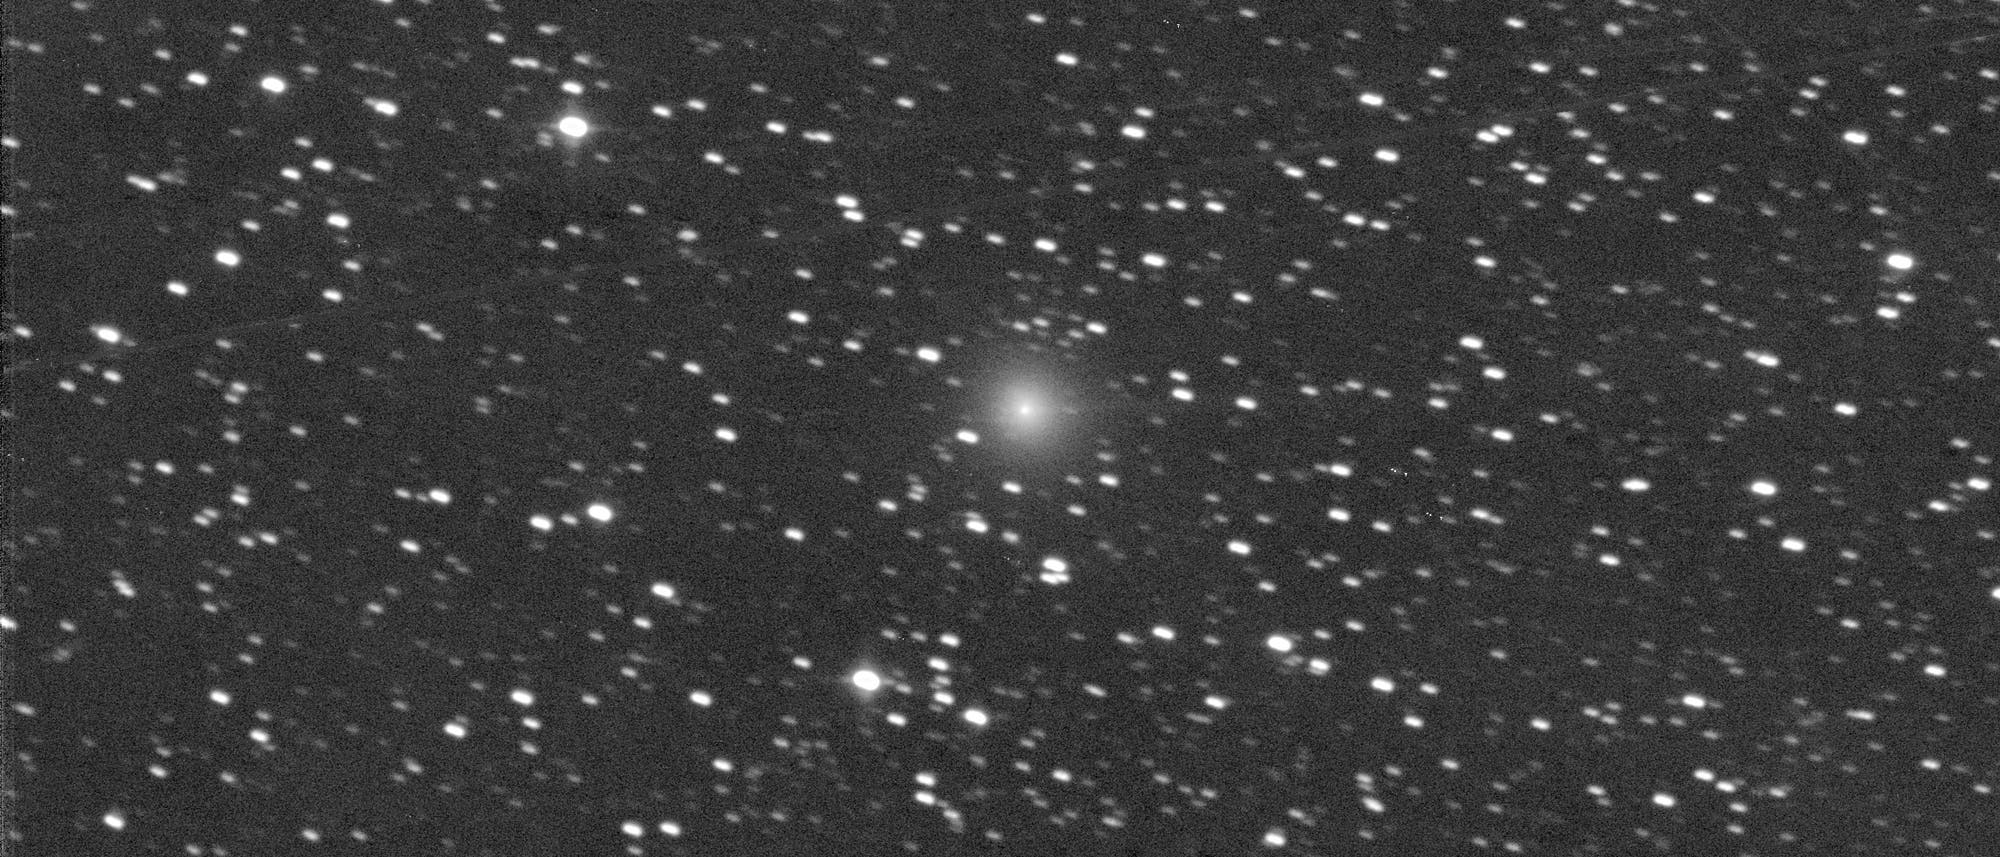 Fotografie eines Kometen, der sich als verwaschener heller Fleck vor einem Hintergrund aus Sternen abhebt.